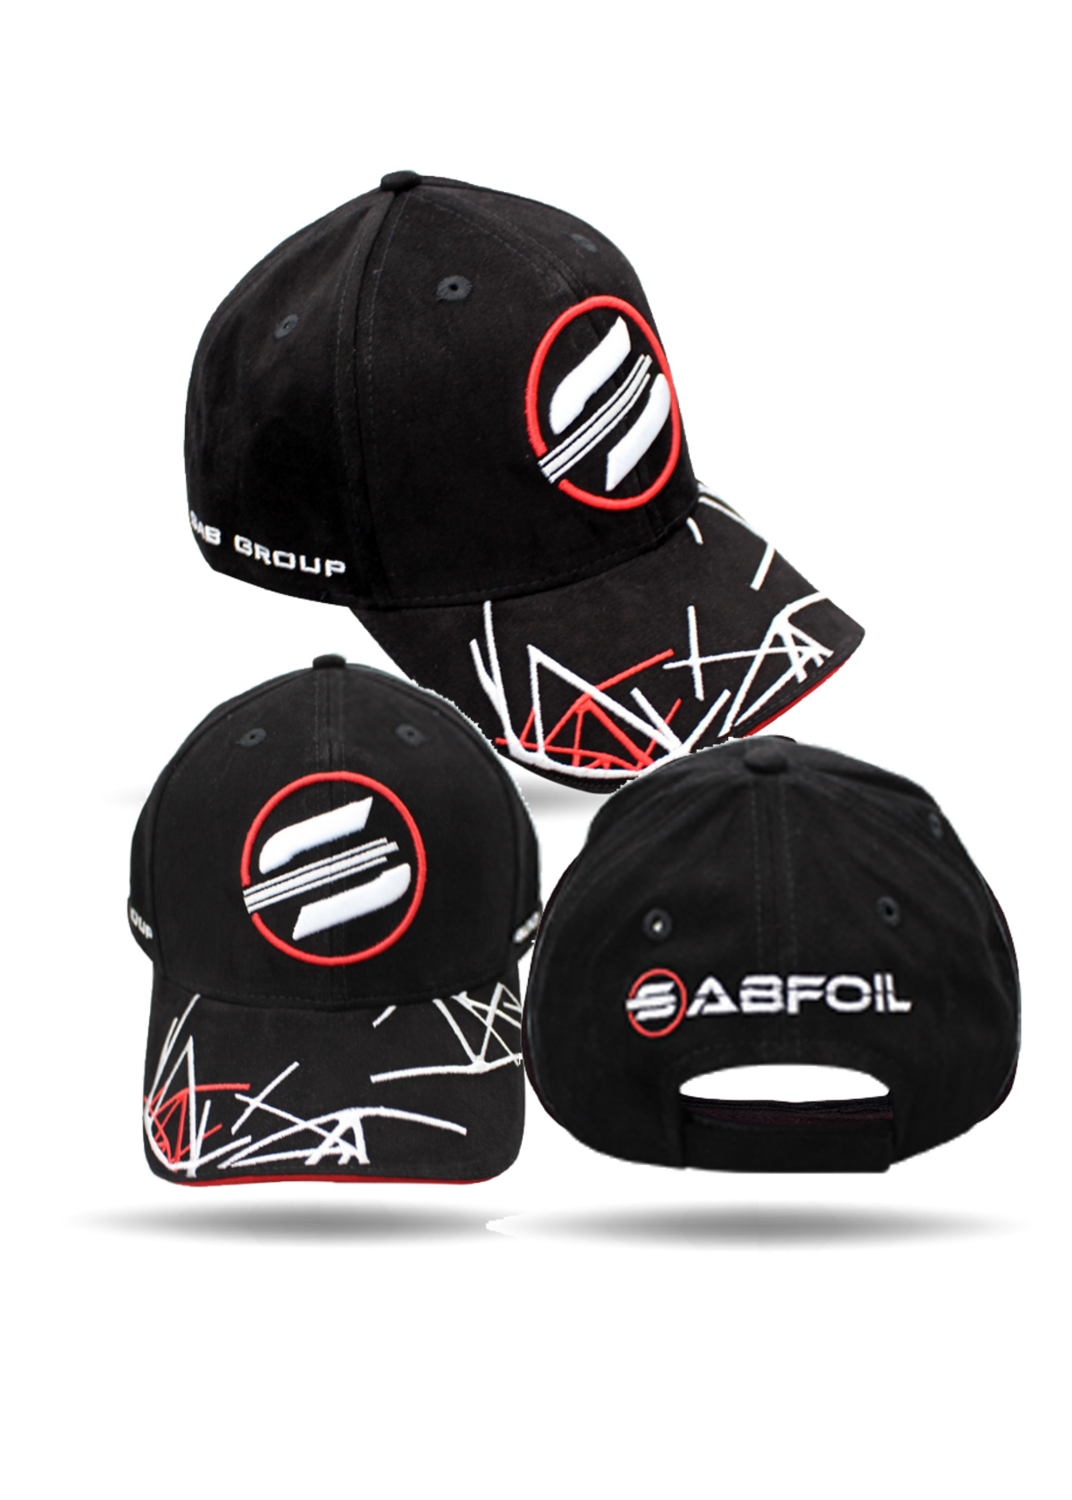 SABFoil Cap (hat)